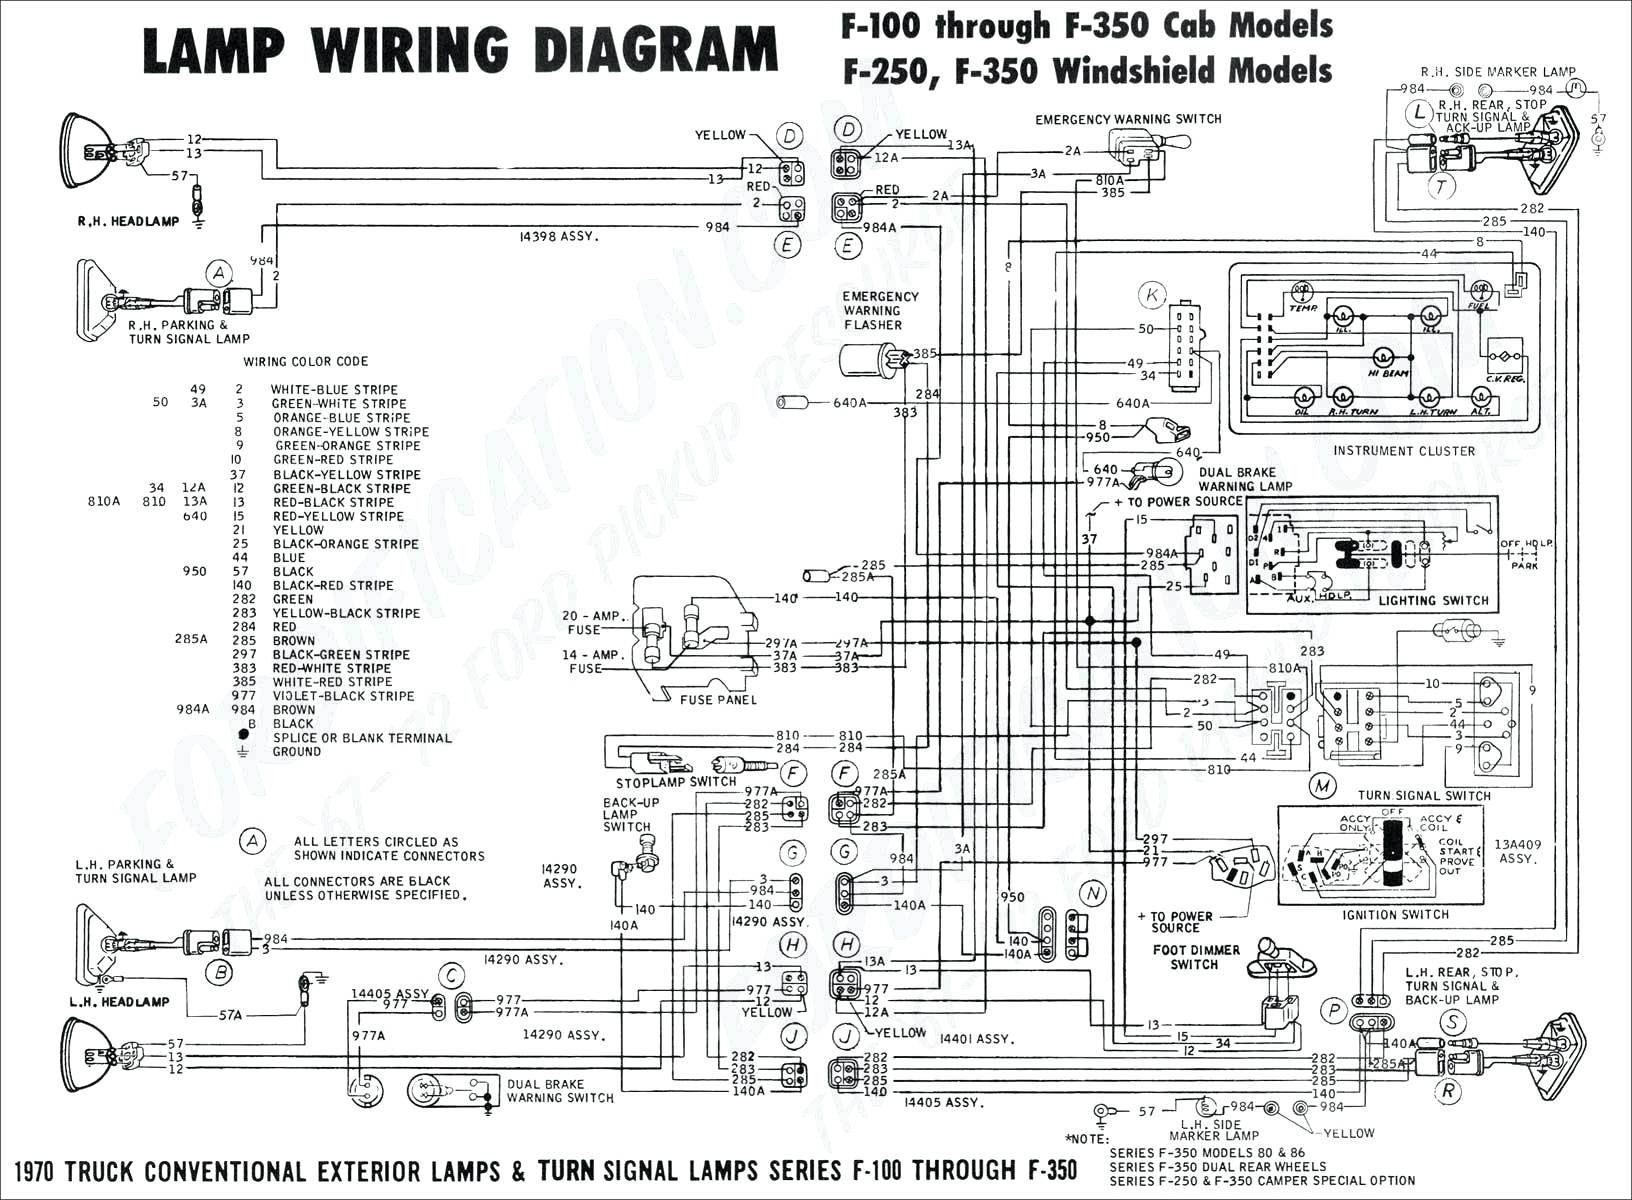 1994 ford Ranger Engine Diagram 2000 ford Ranger Headlight Wiring Diagram Wiring Diagram Of 1994 ford Ranger Engine Diagram